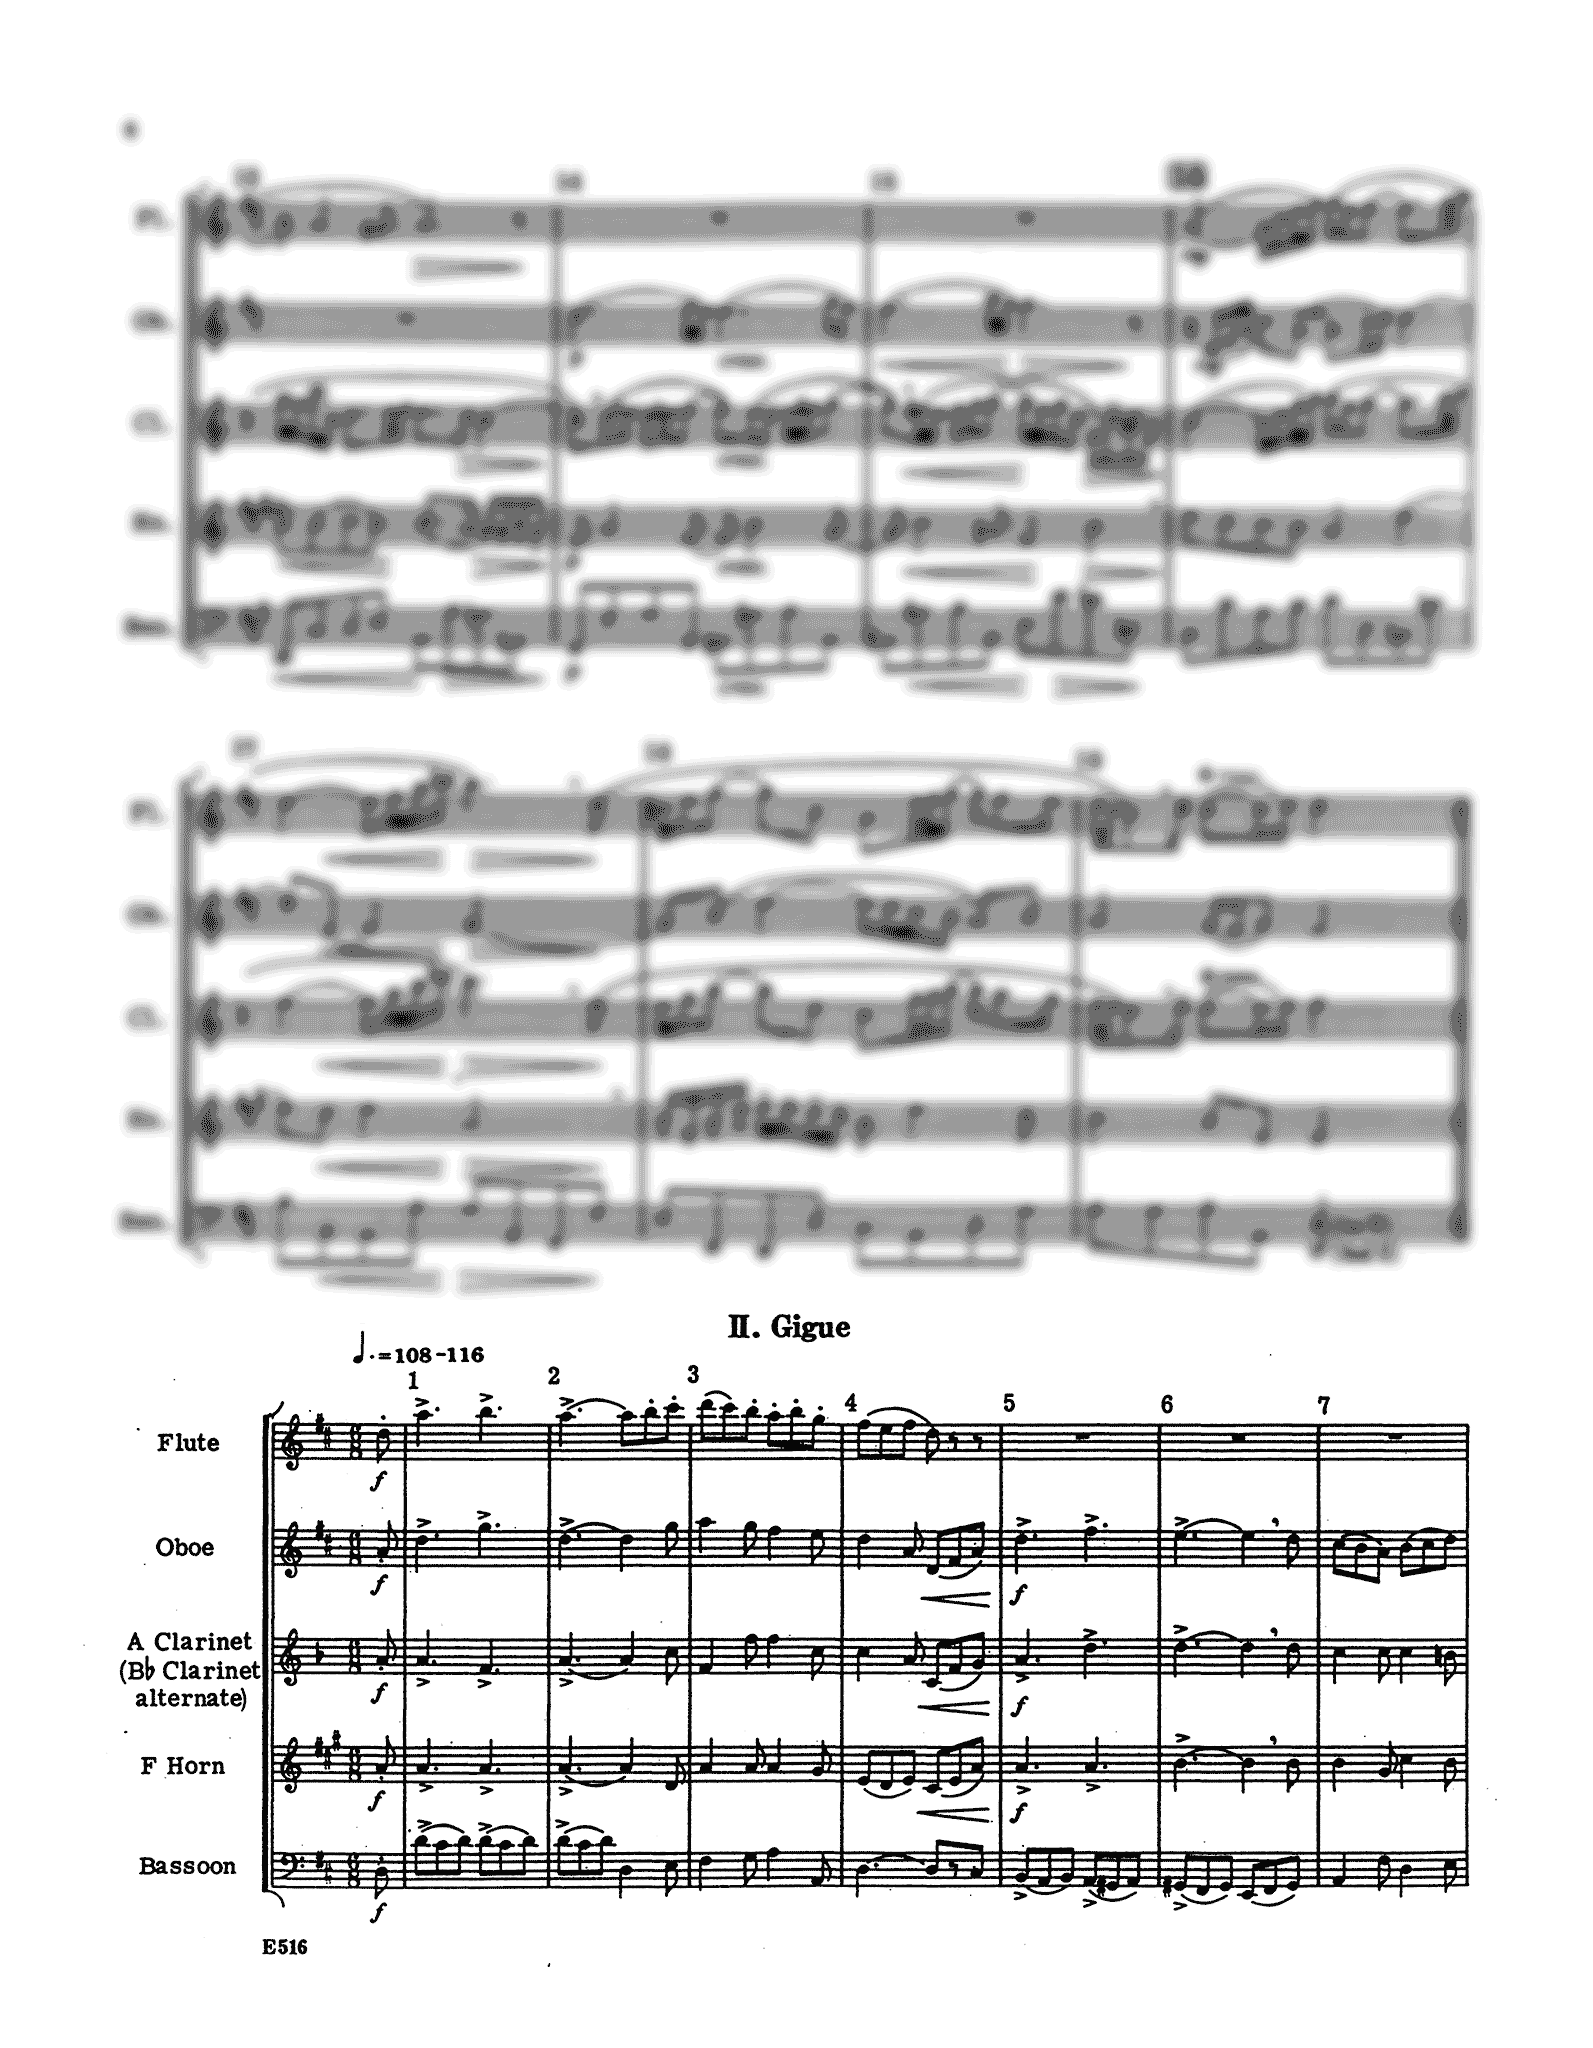 J.S. Bach Air on G String Suite woodwind quintet arrangement - Movement 2